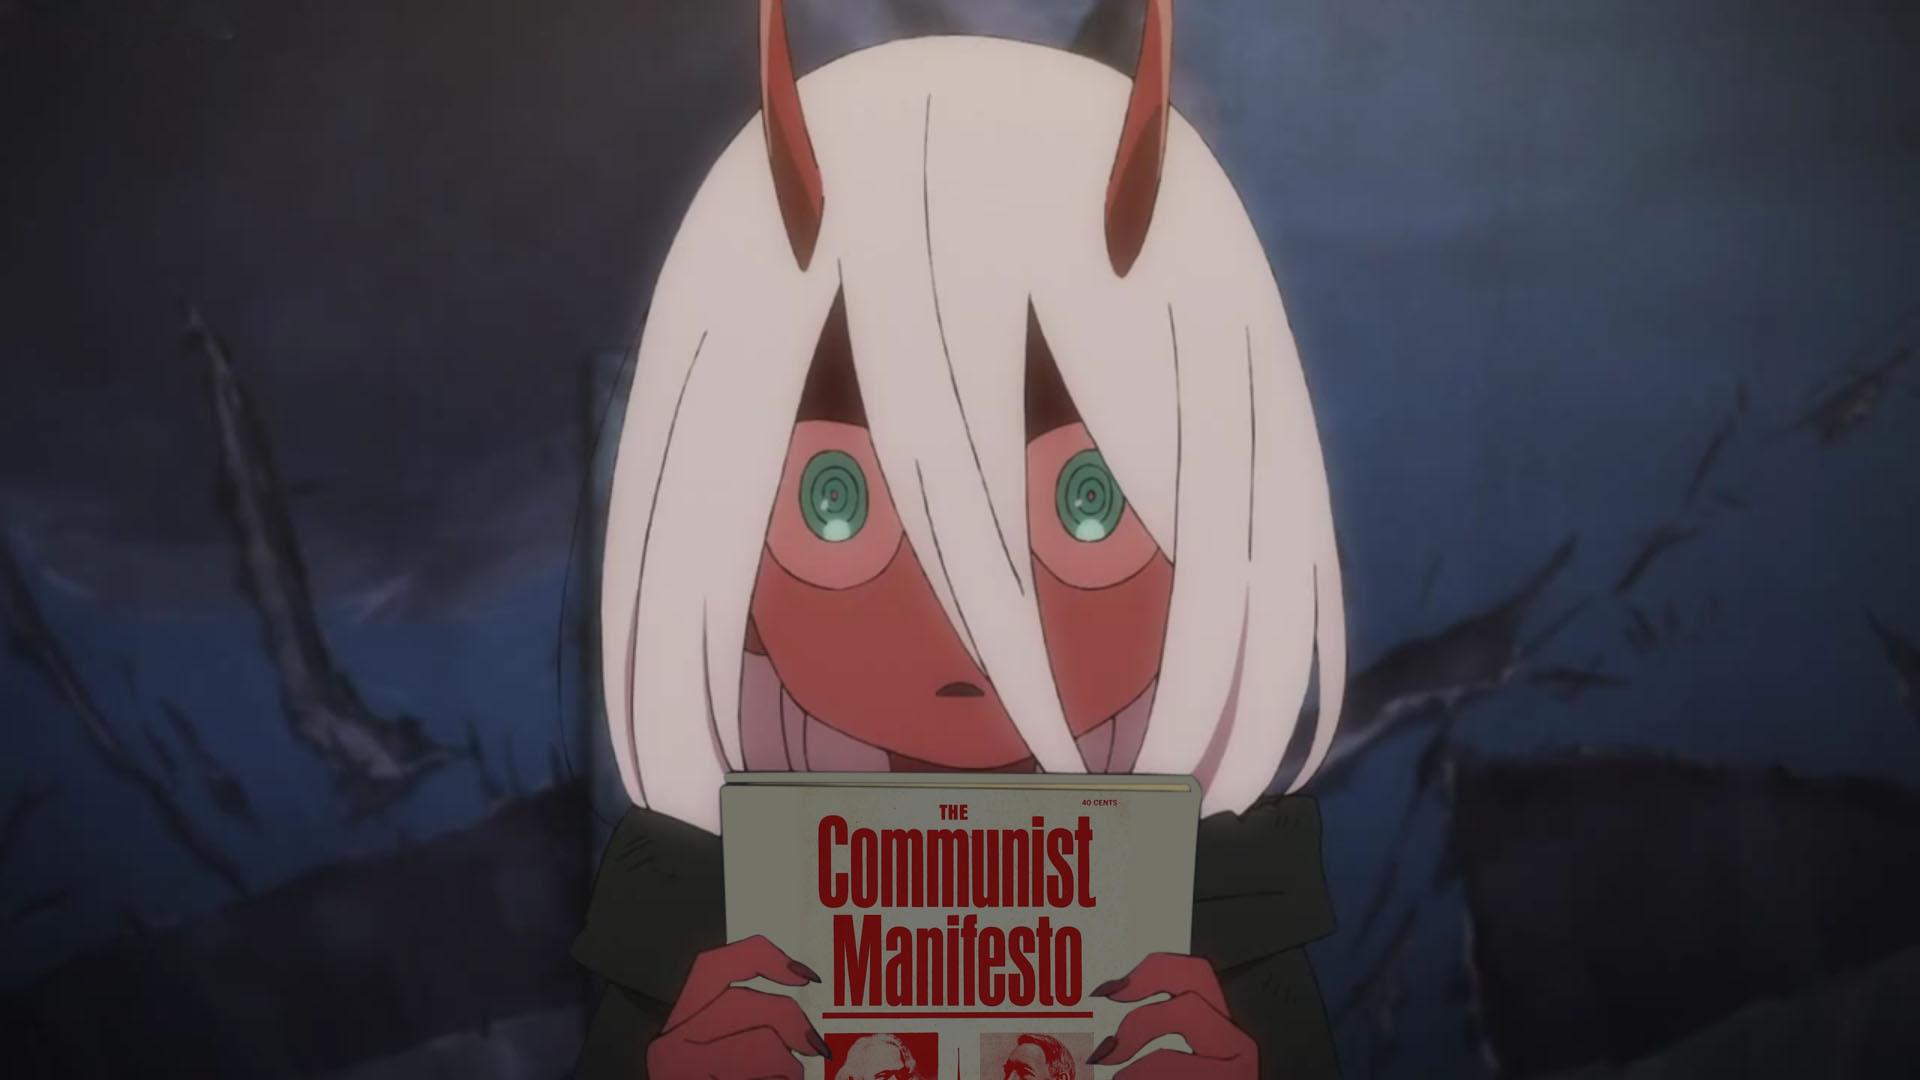 zerotwo finds the communist manifesto